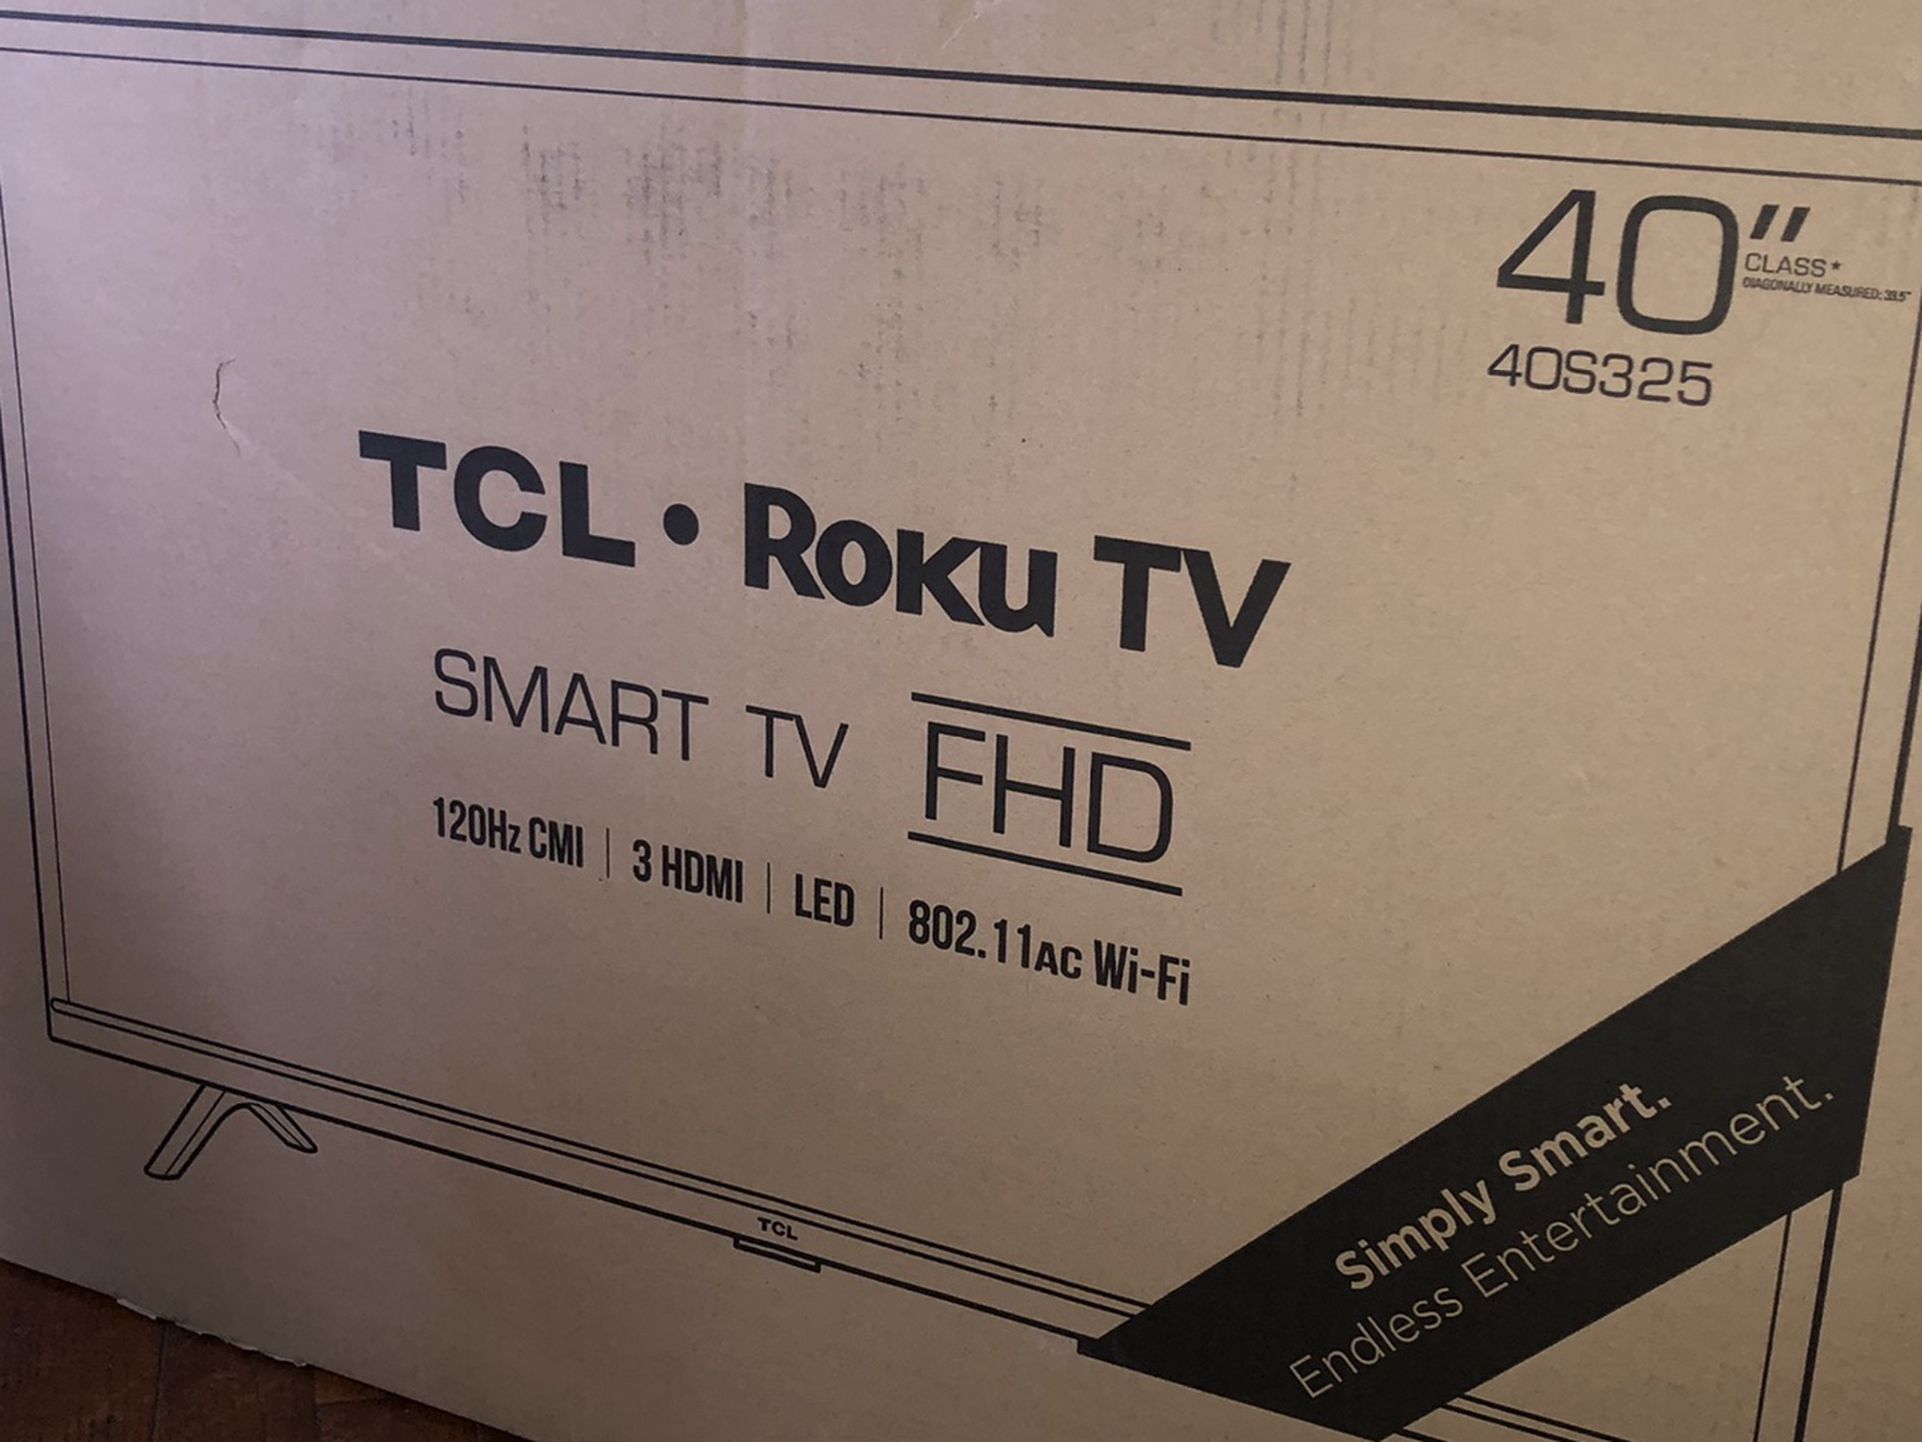 40” TCL Roku TV